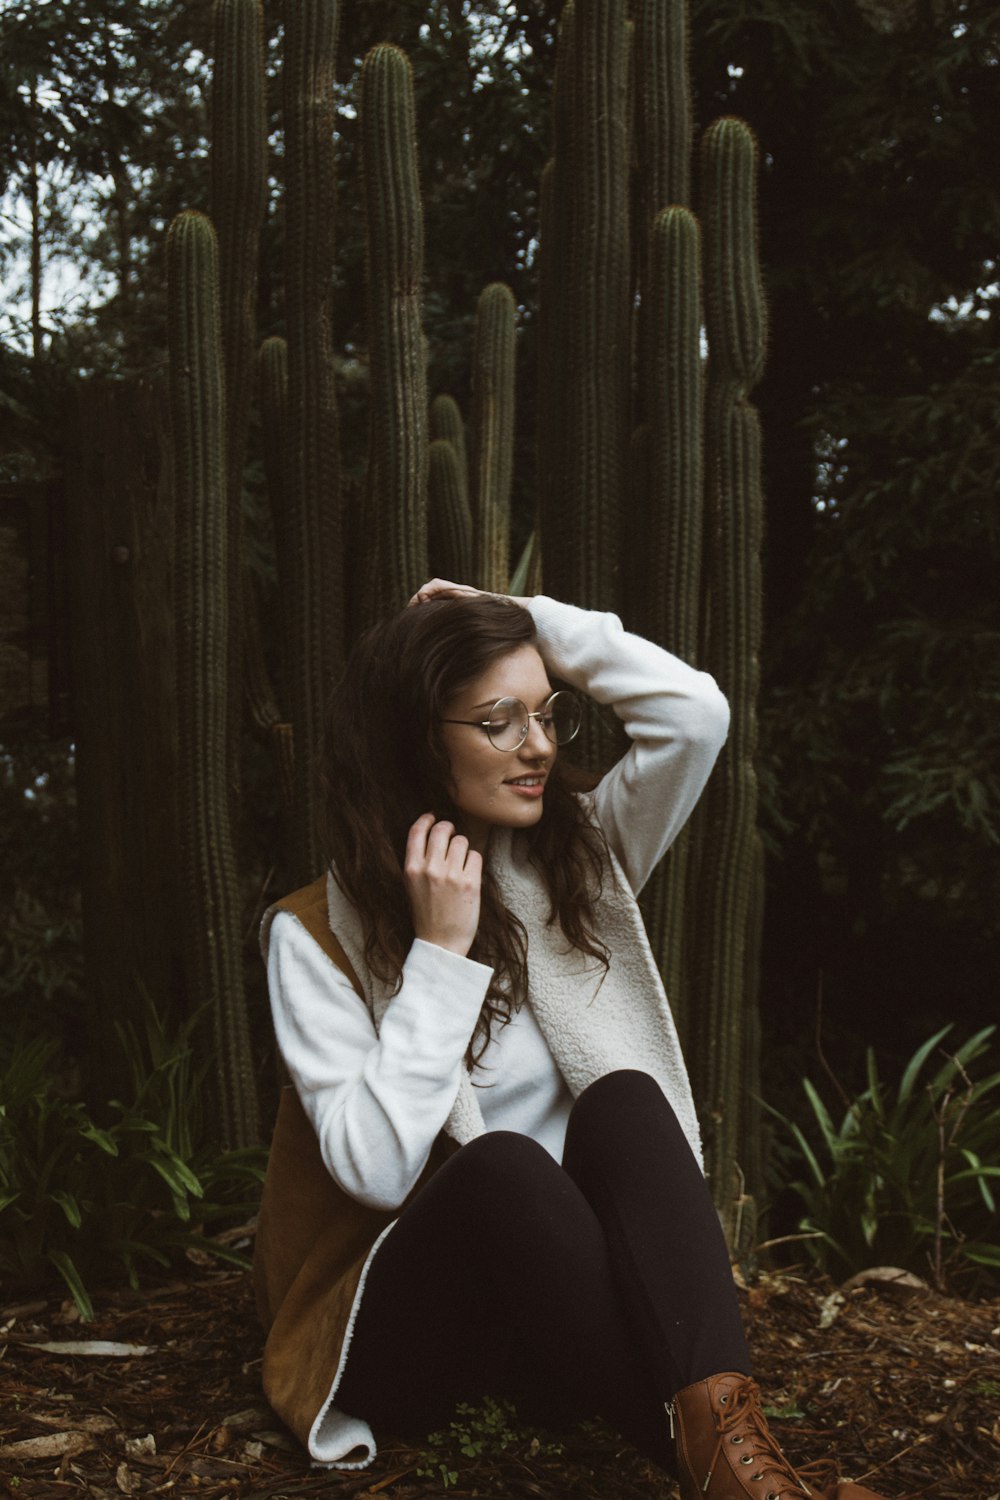 녹색 선인장 식물 옆에 앉아있는 갈색과 흰색 코트를 입고 웃는 여자